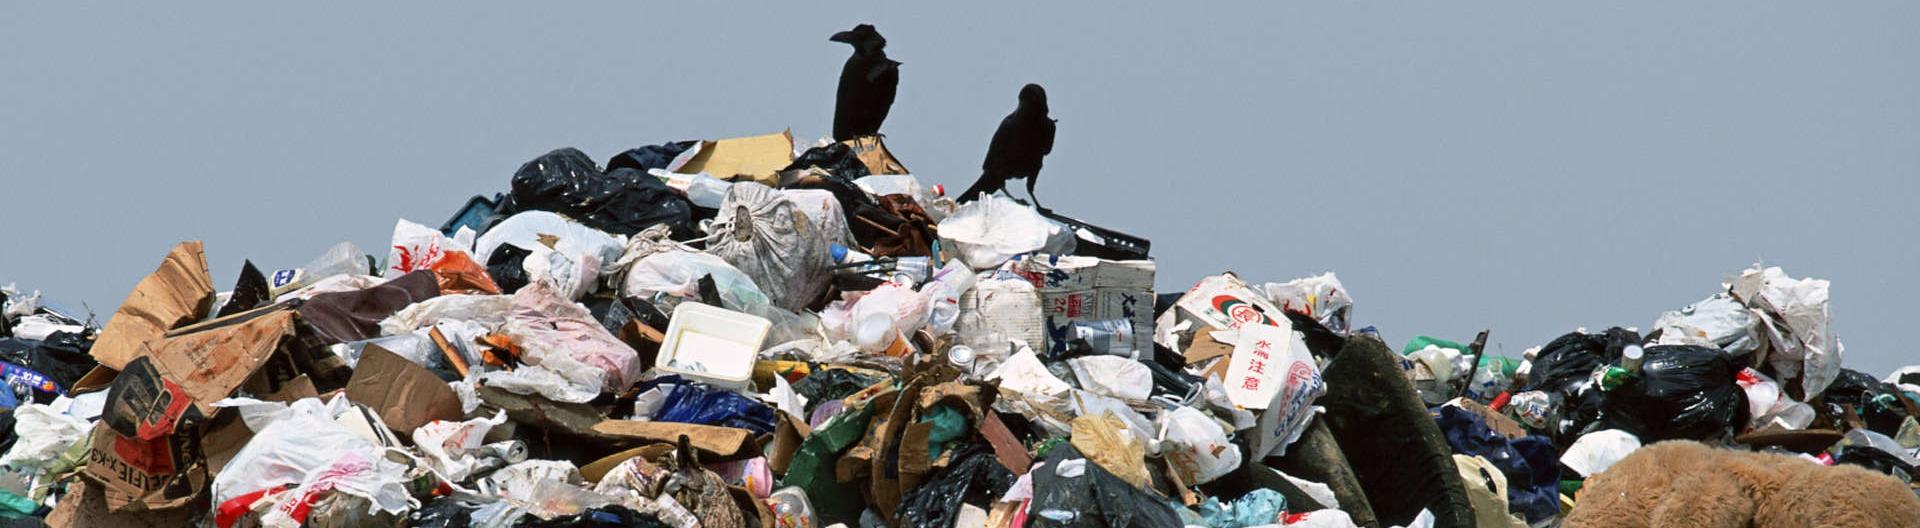 Заработать на отходах: может ли переработка мусора стать бизнесом 